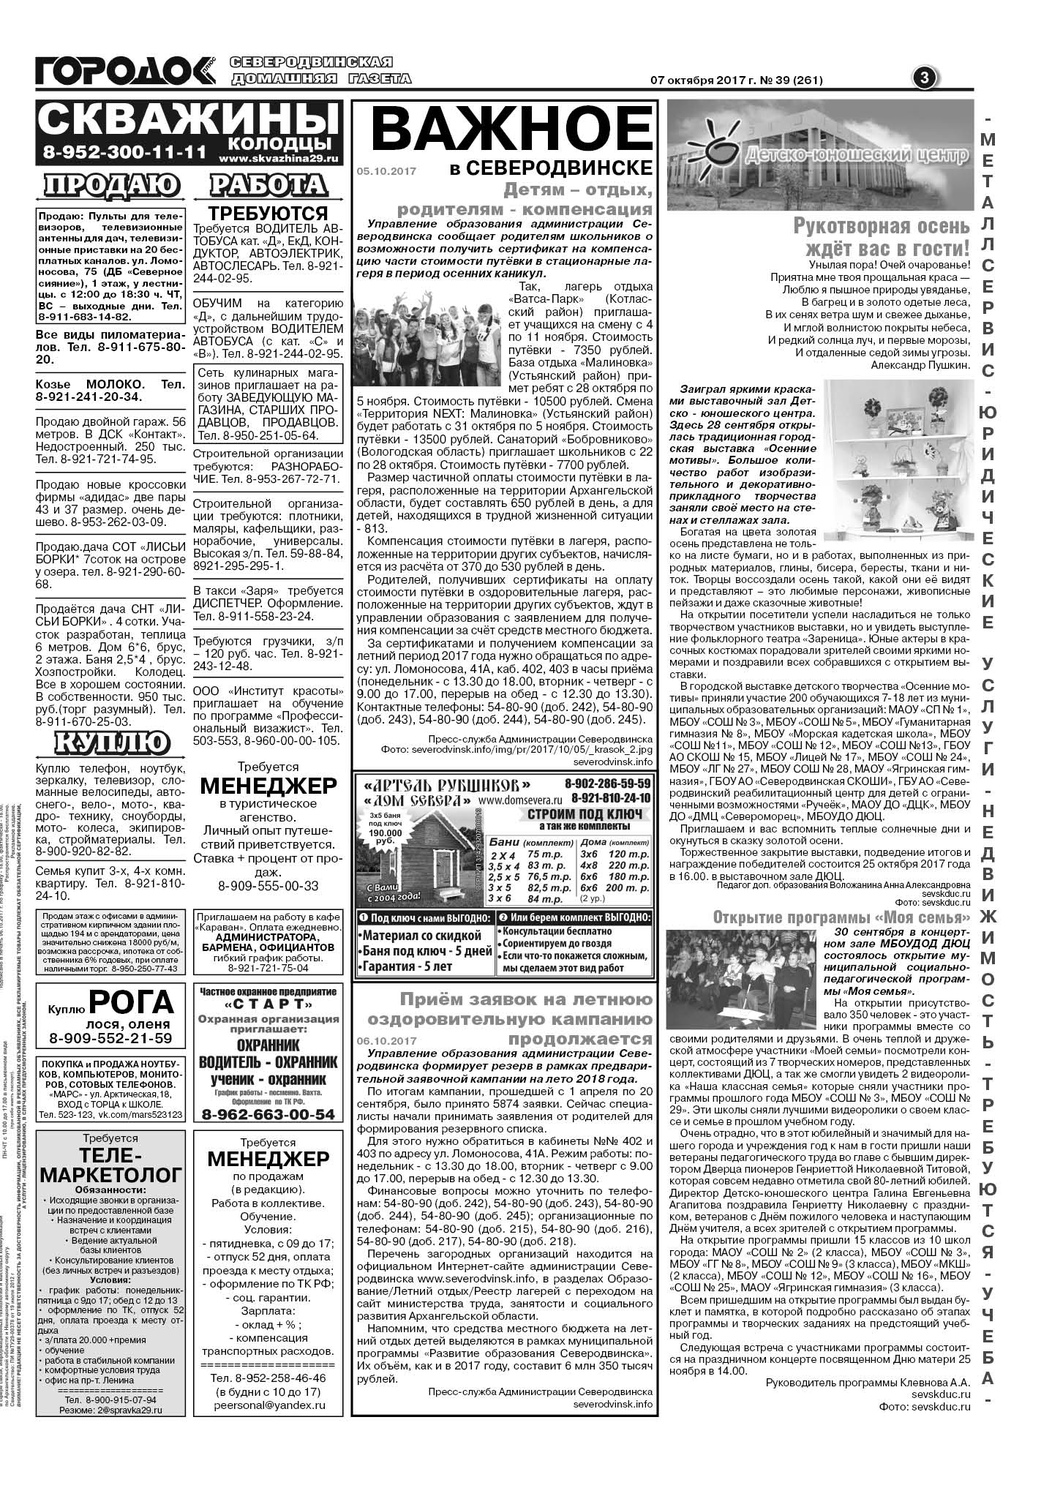 Городок плюс, выпуск номер 39 от 07 октября 2017 года, страница 3.